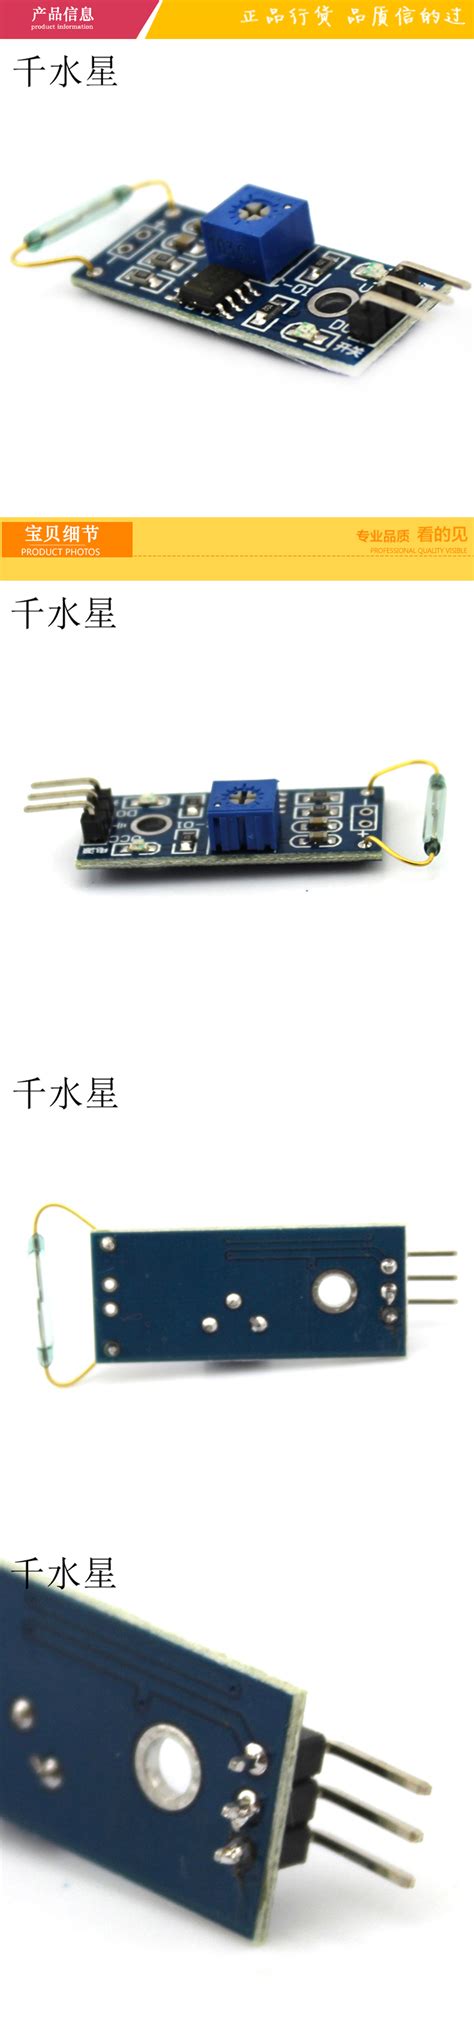 模拟量位移传感器KJT-WJ12-电涡流位移传感器-南京凯基特电气有限公司